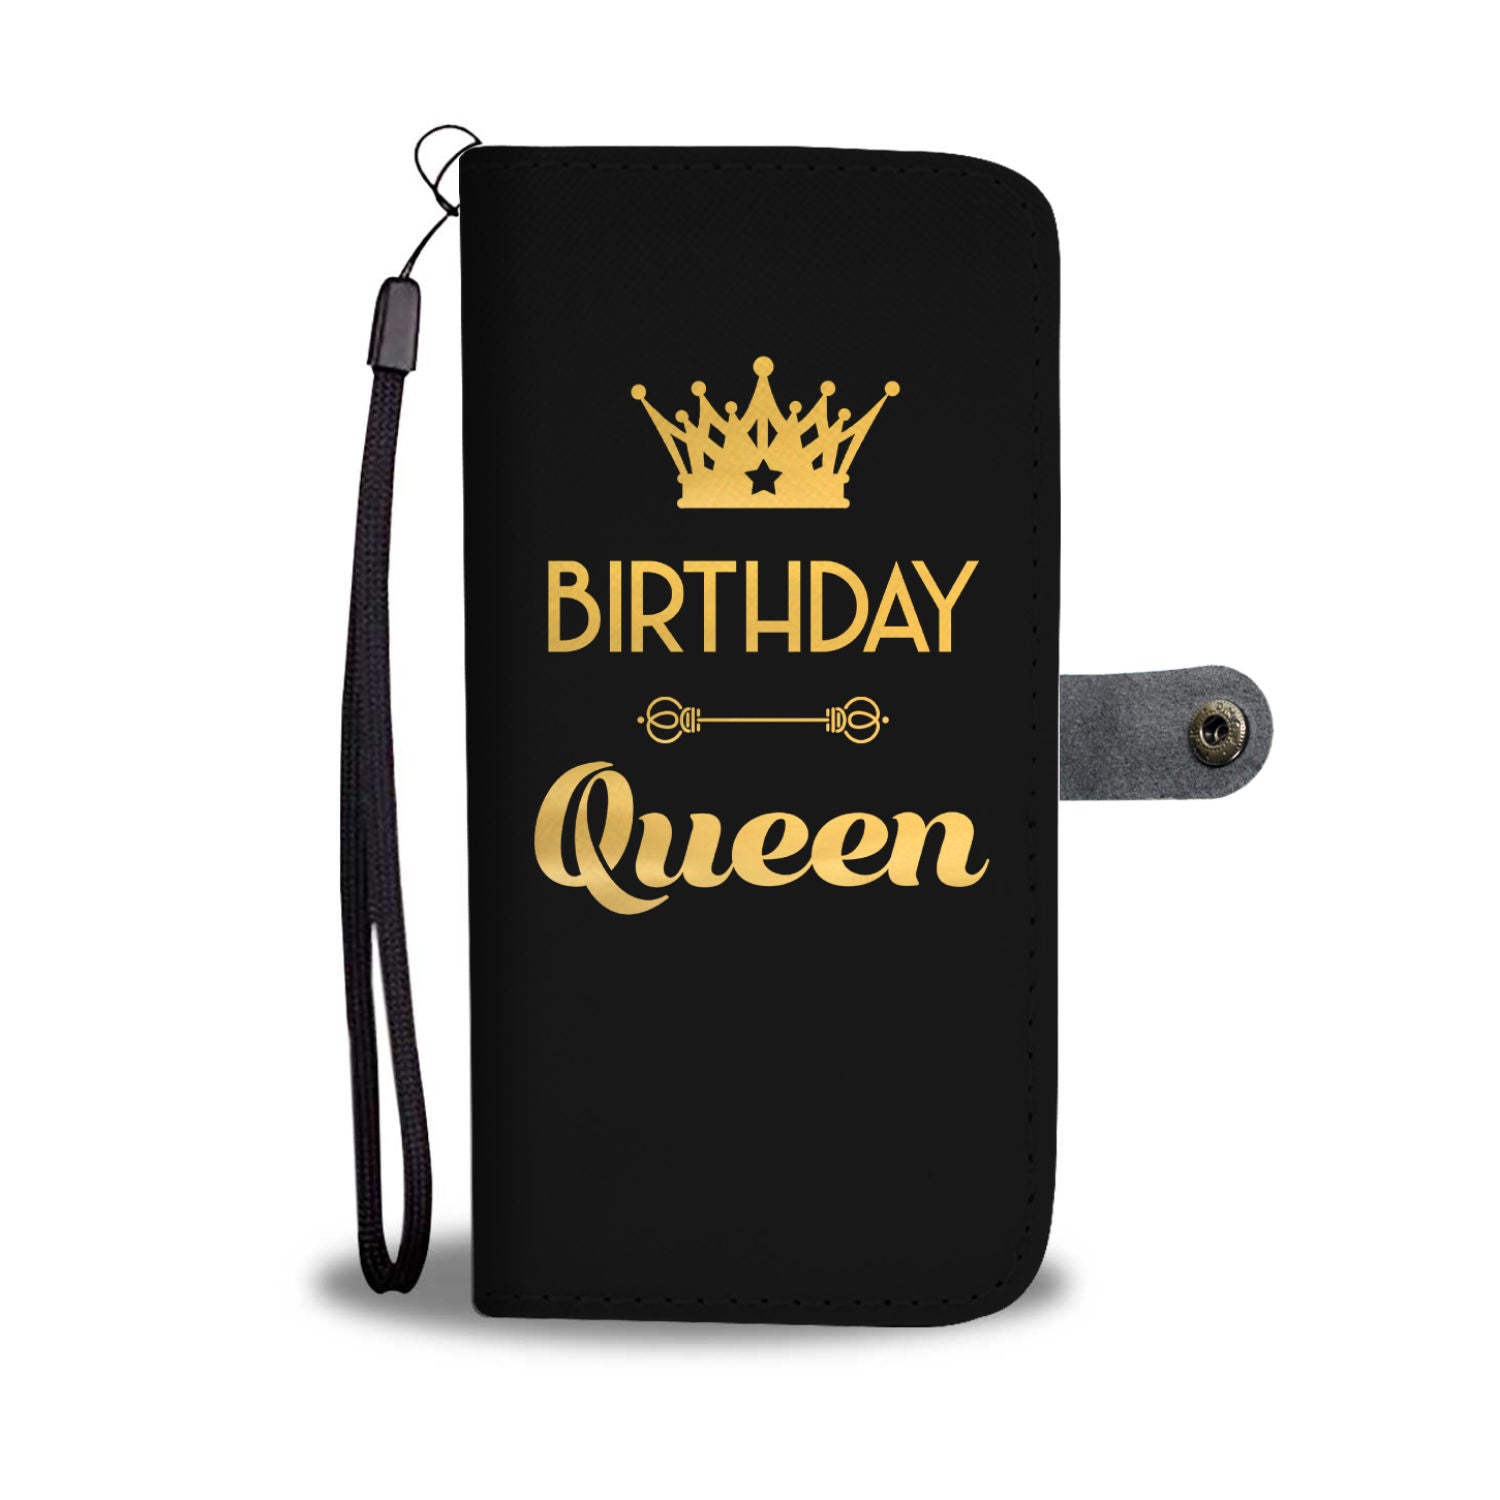 Birthday Queen Phone Wallet